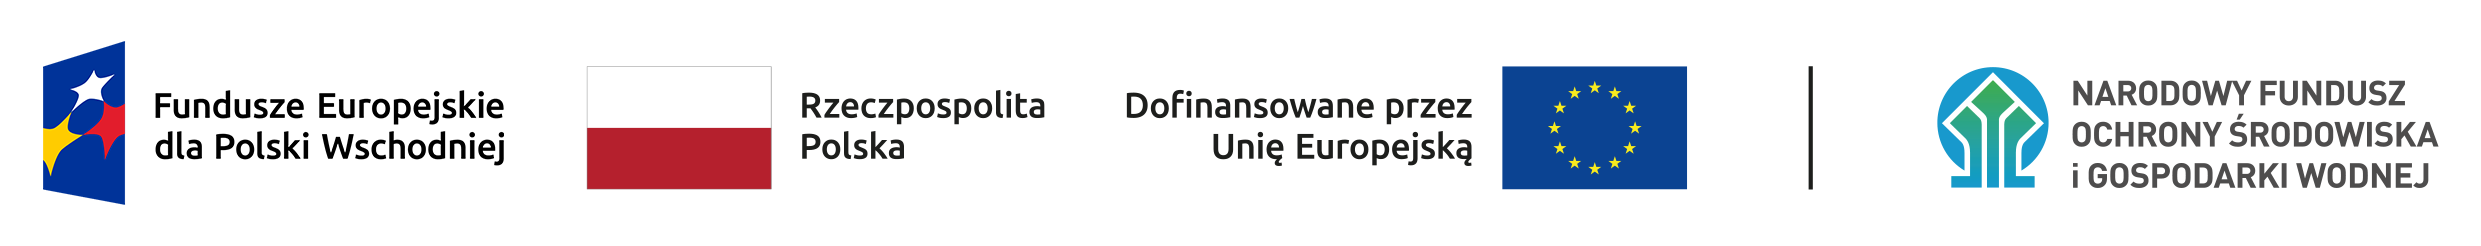 Ciąg znaków, od lewej: Fundusze Europejskie dla Polski Wschodniej, Rzeczpospolita Polska, Dofinansowane przez Unię Europejską i Narodowy Fundusz Ochrony Środowiska i Gospodarki Wodnej